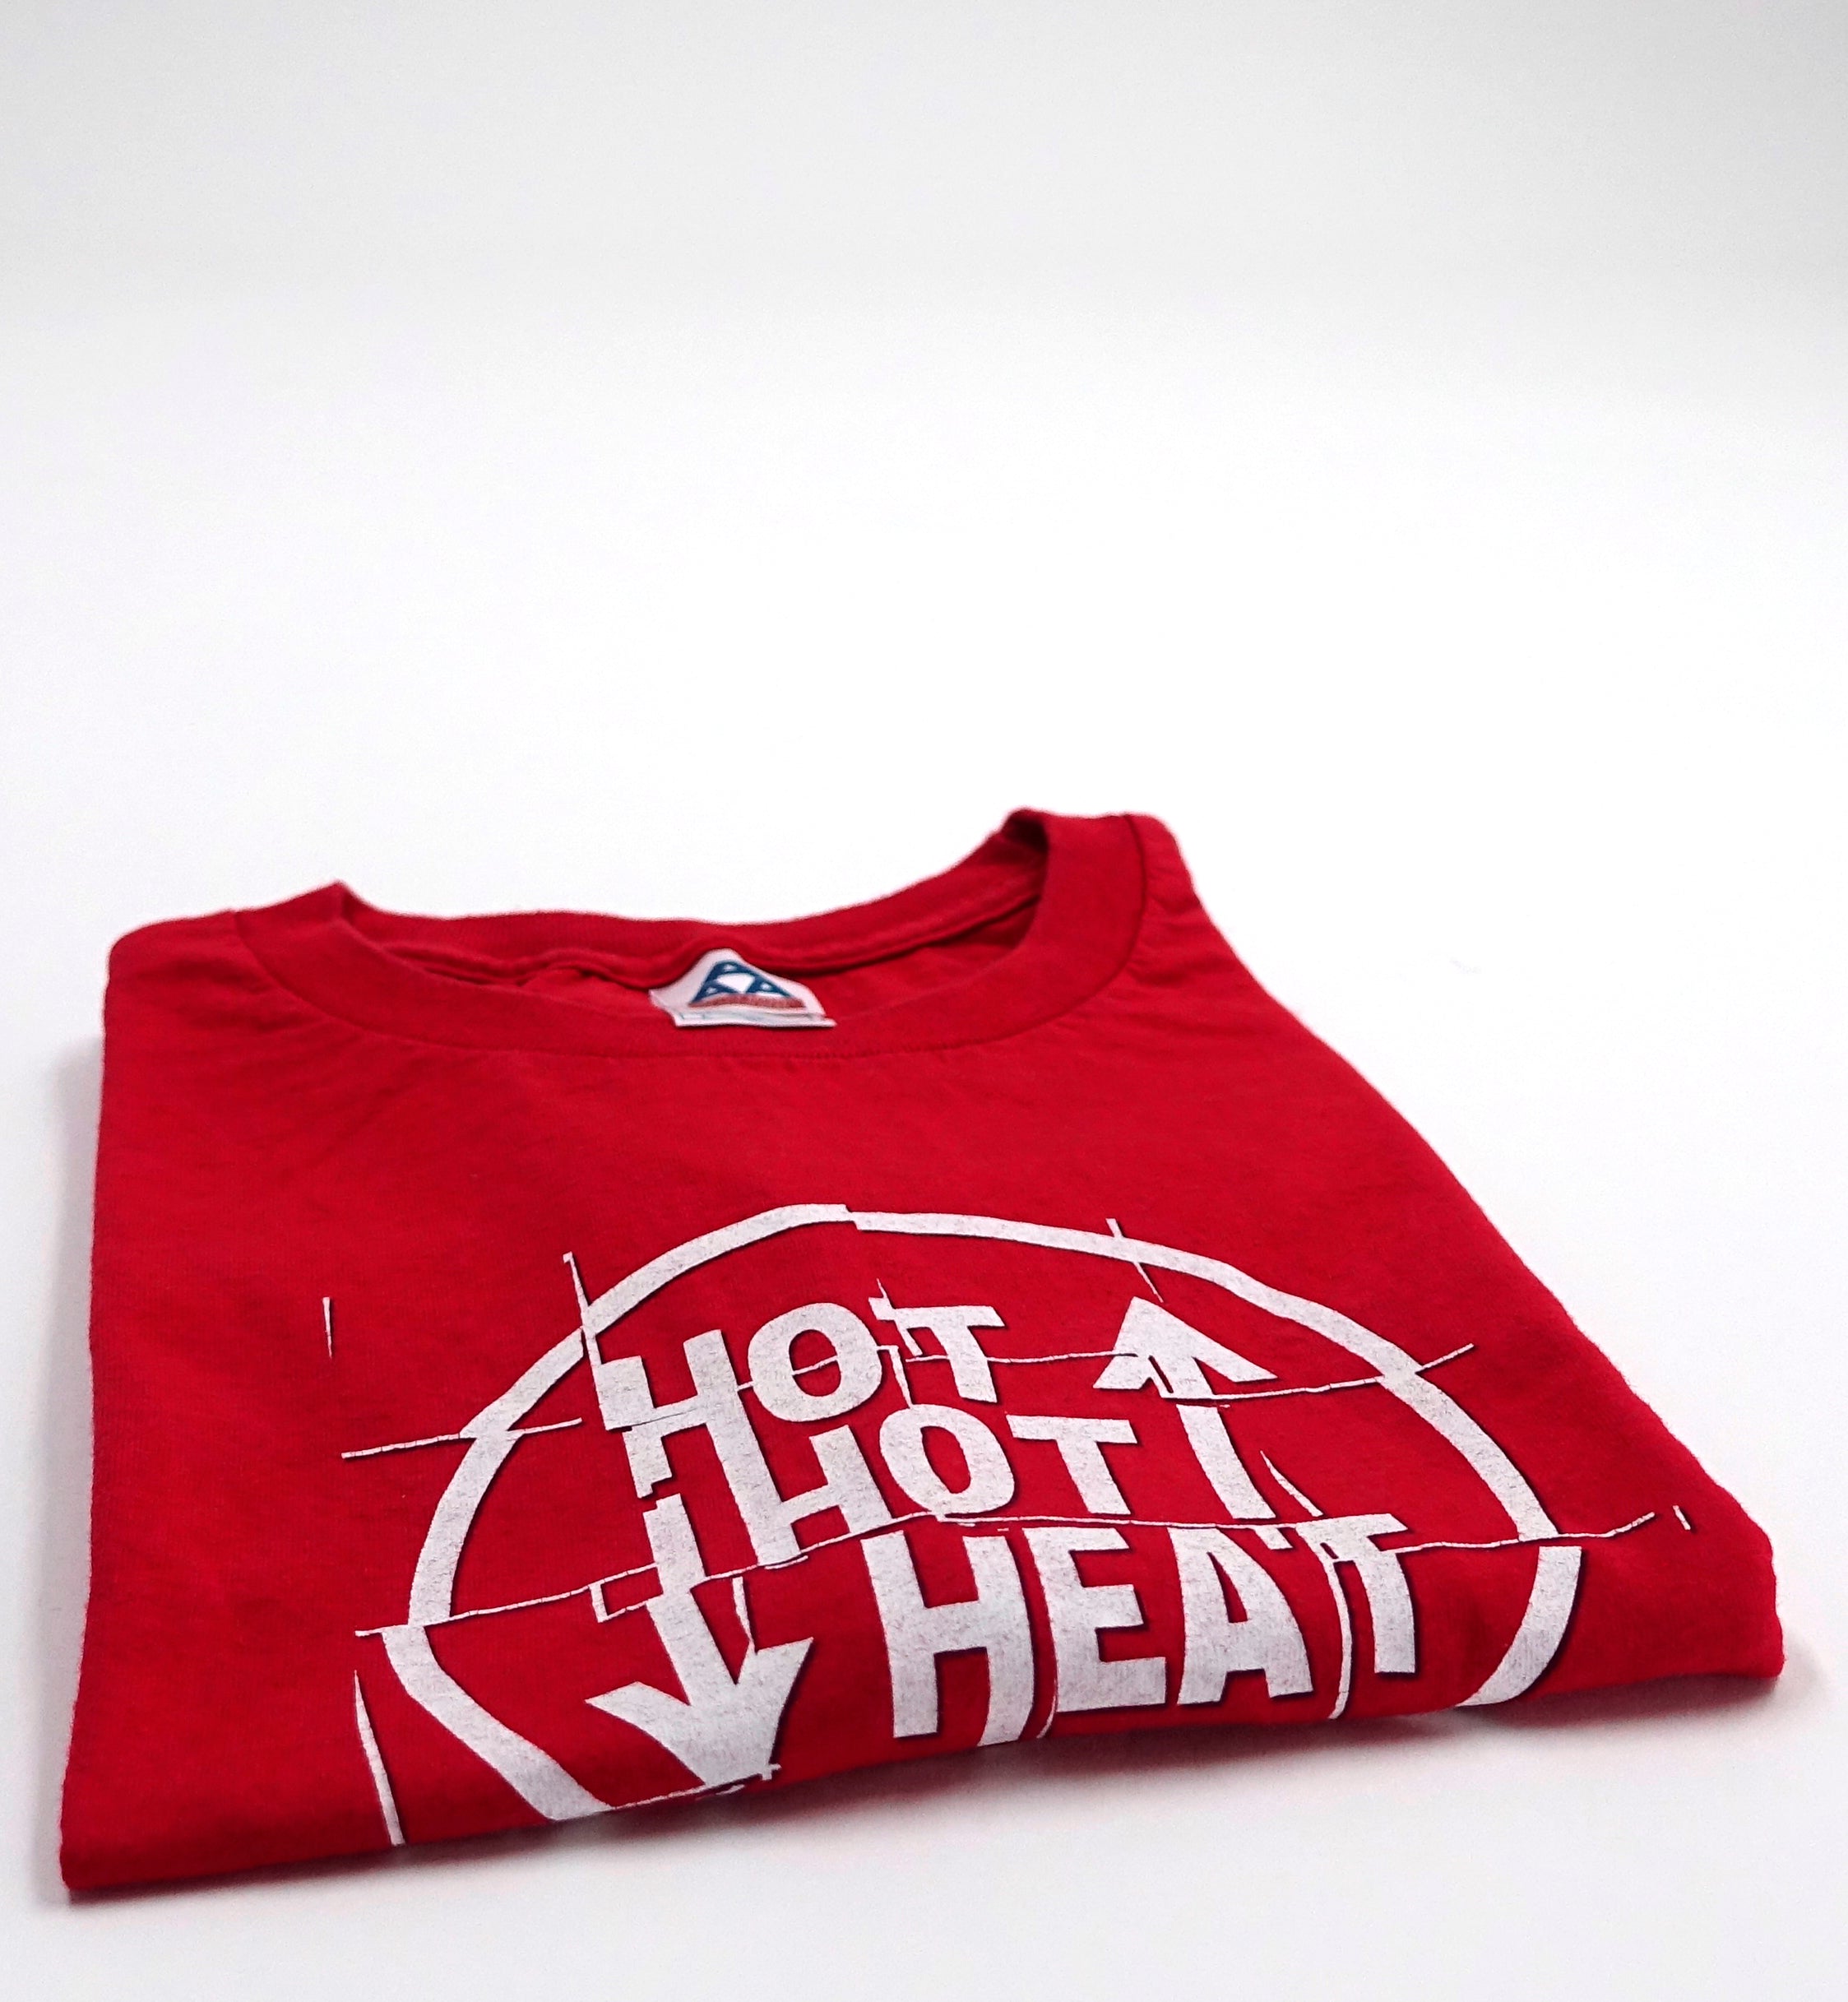 Hot Hot Heat - Elevator 2005 Tour Shirt Size Large